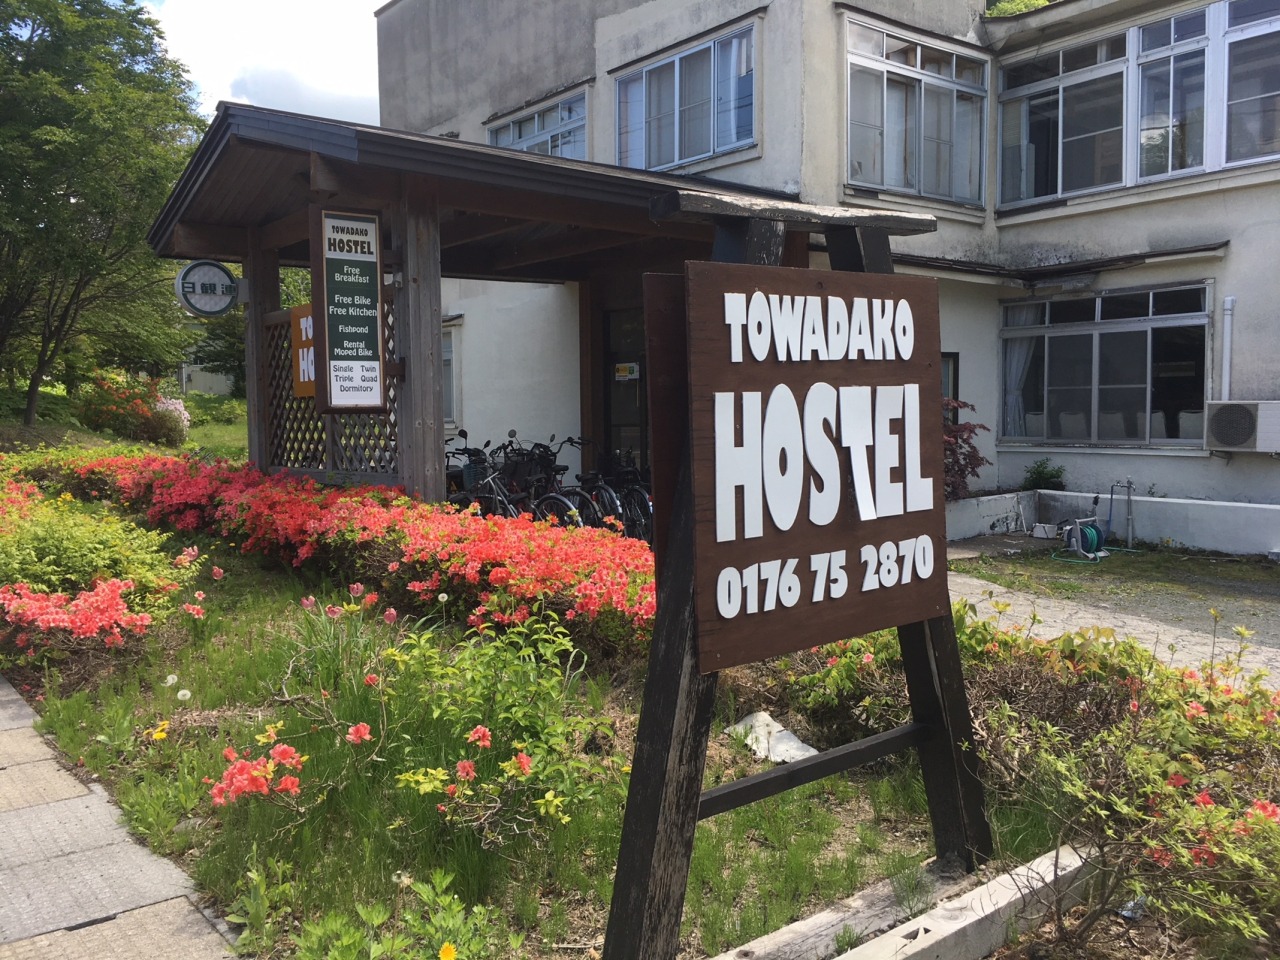 十和田湖旅馆 (Towadako Hostel)